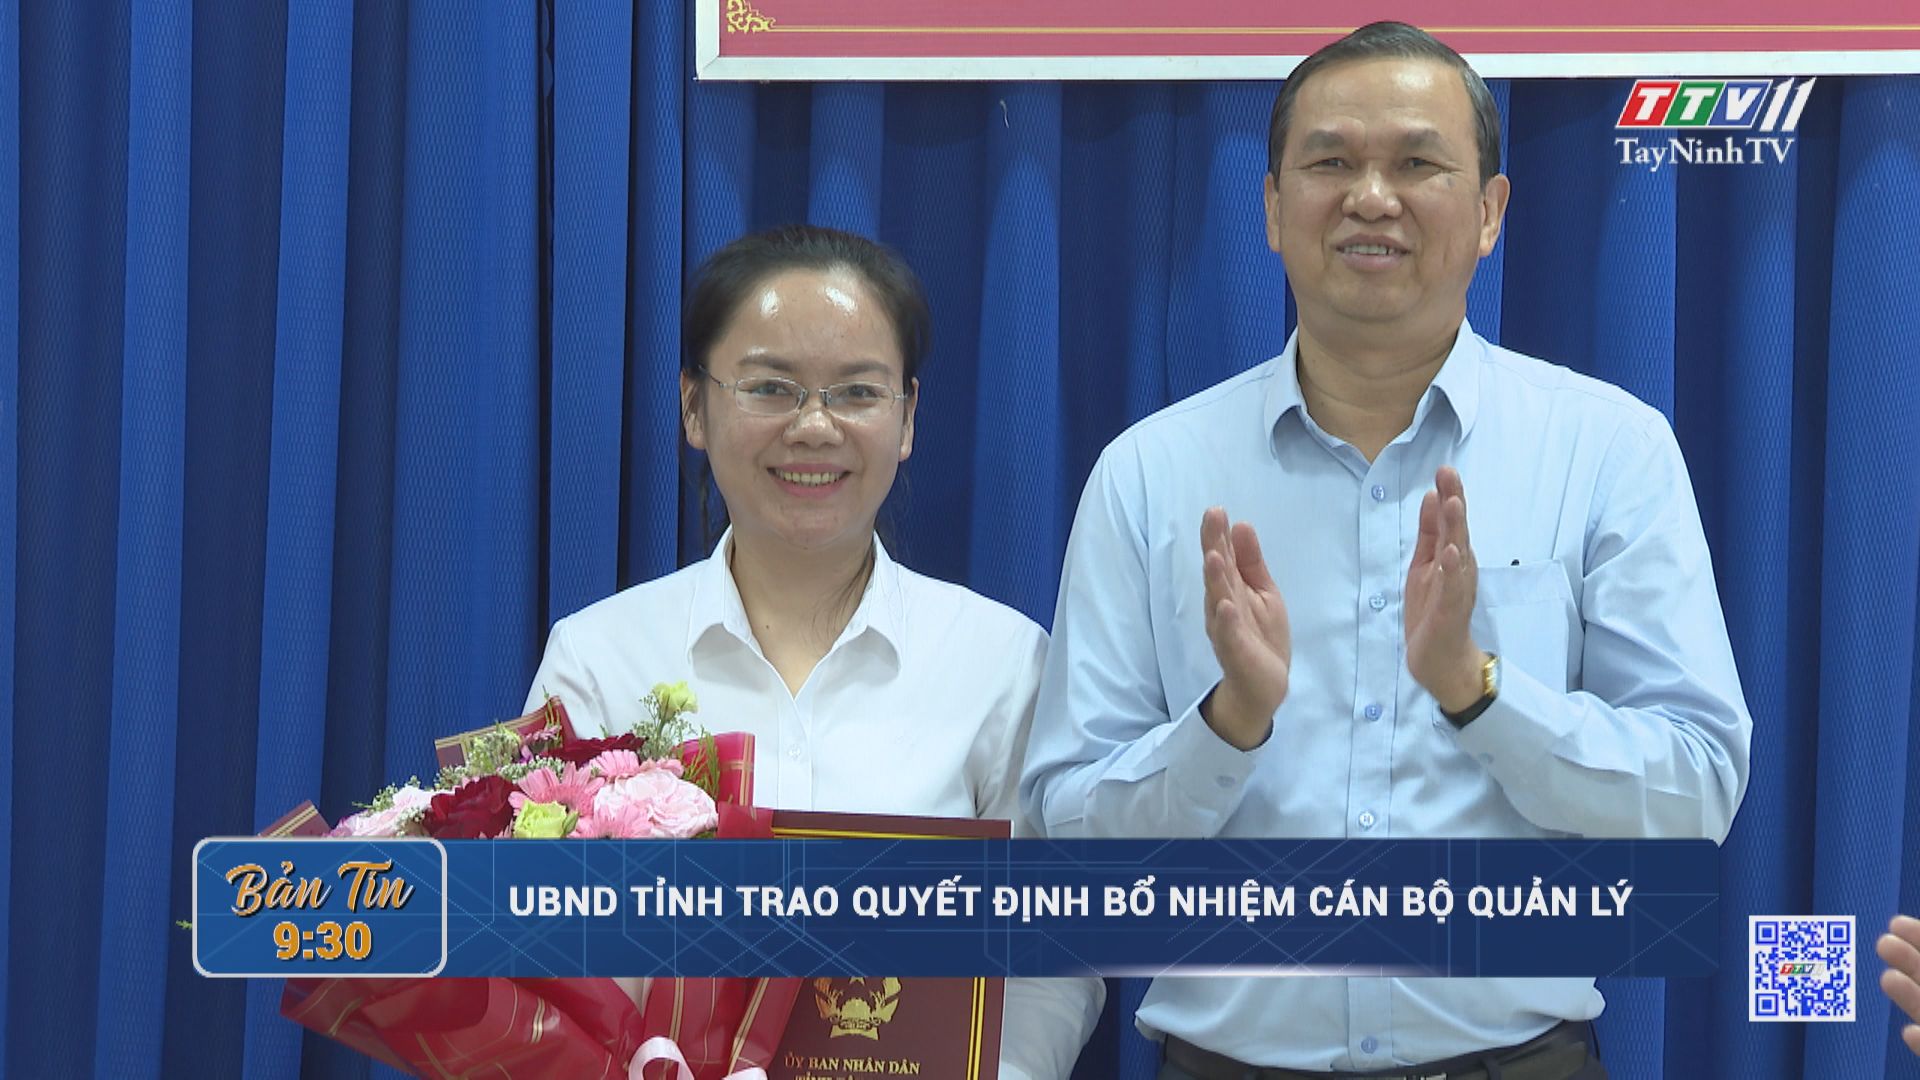 UBND tỉnh trao quyết định bổ nhiệm cán bộ quản lý | TayNinhTV